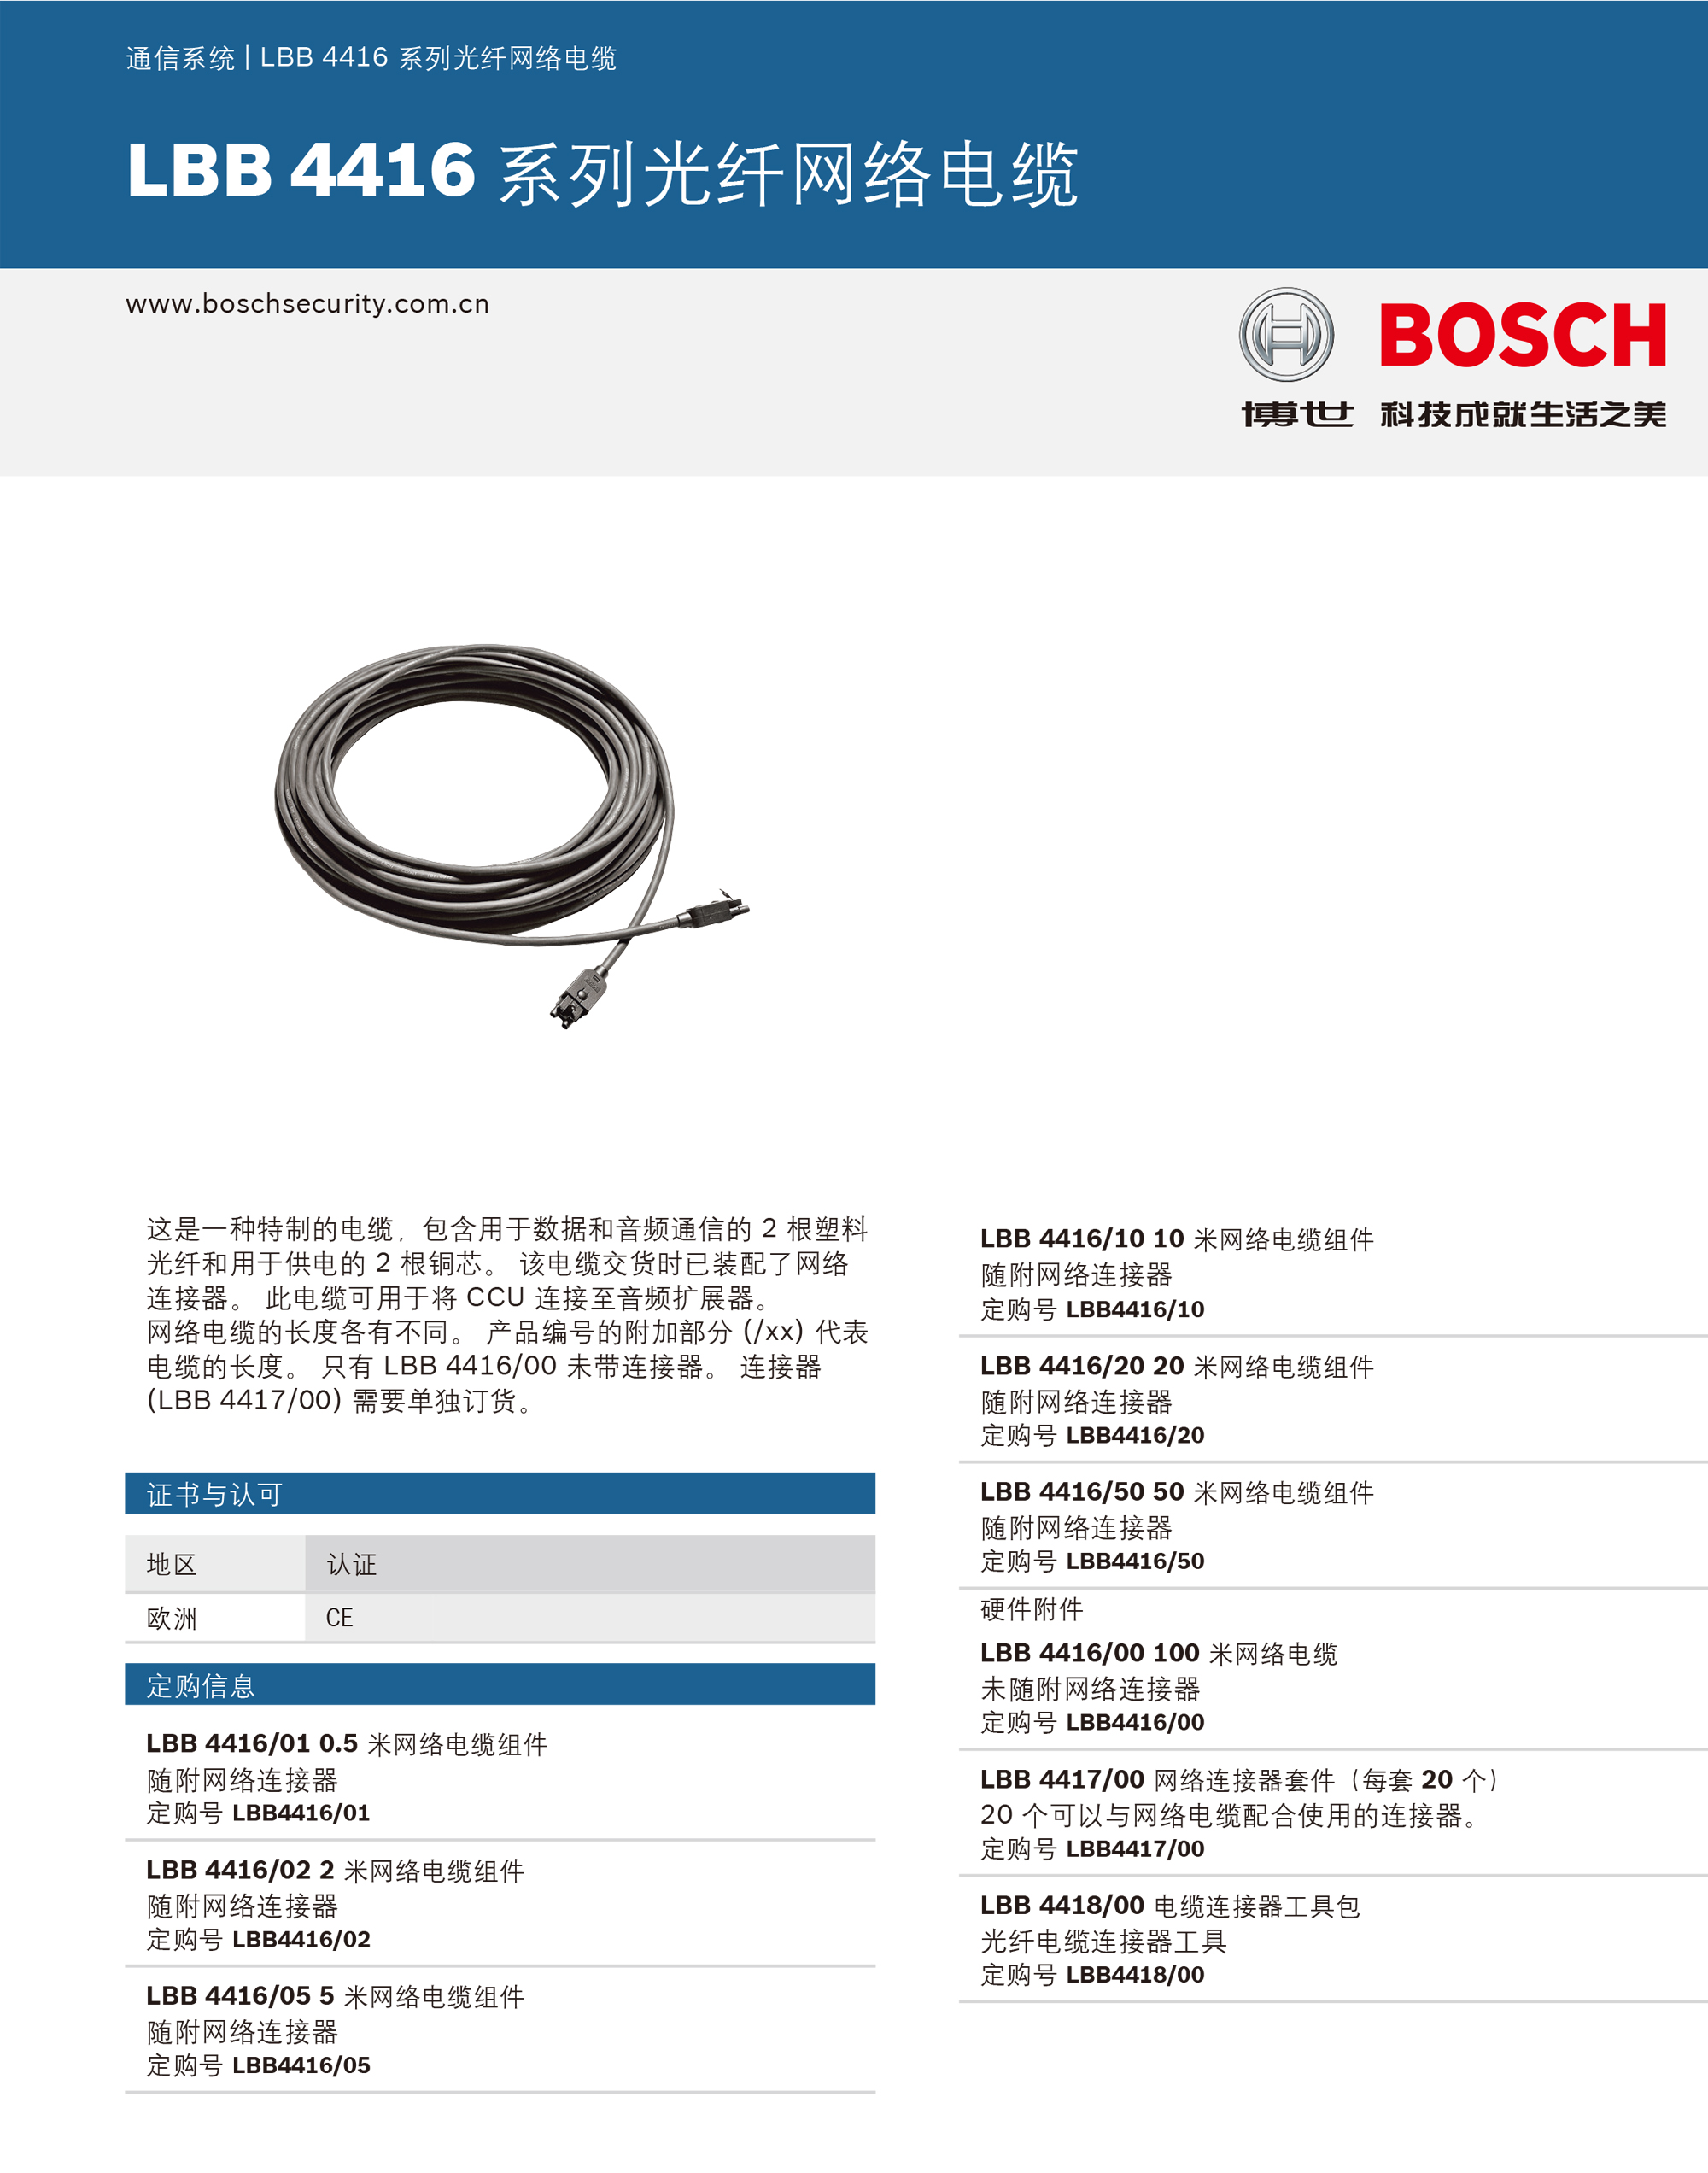 LBB 4416 系列光纤网络电缆